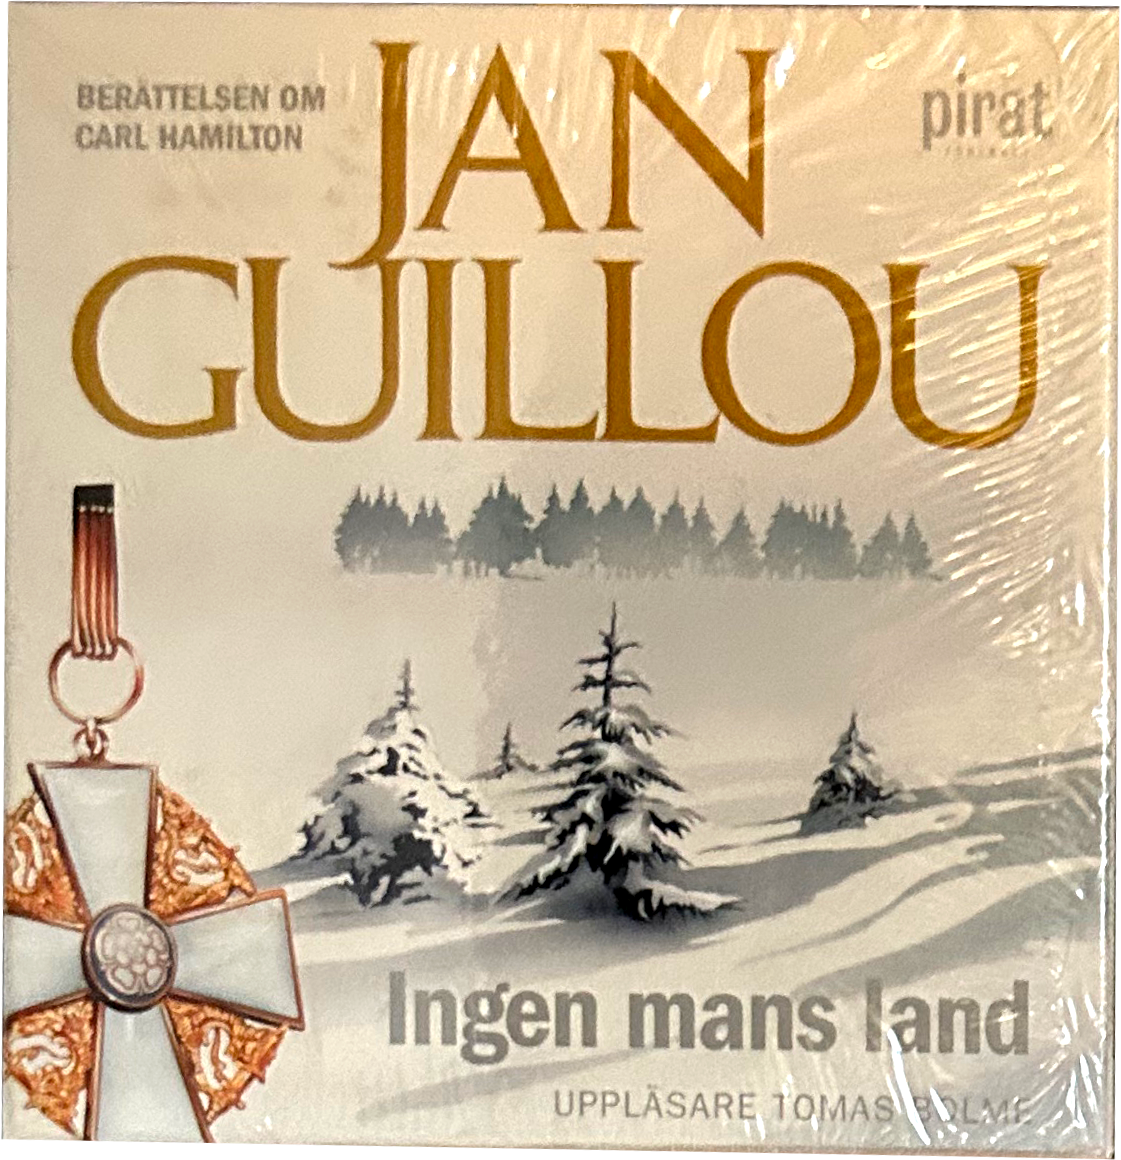 Ingen mans land - Jan Guillou (Ljudbok)